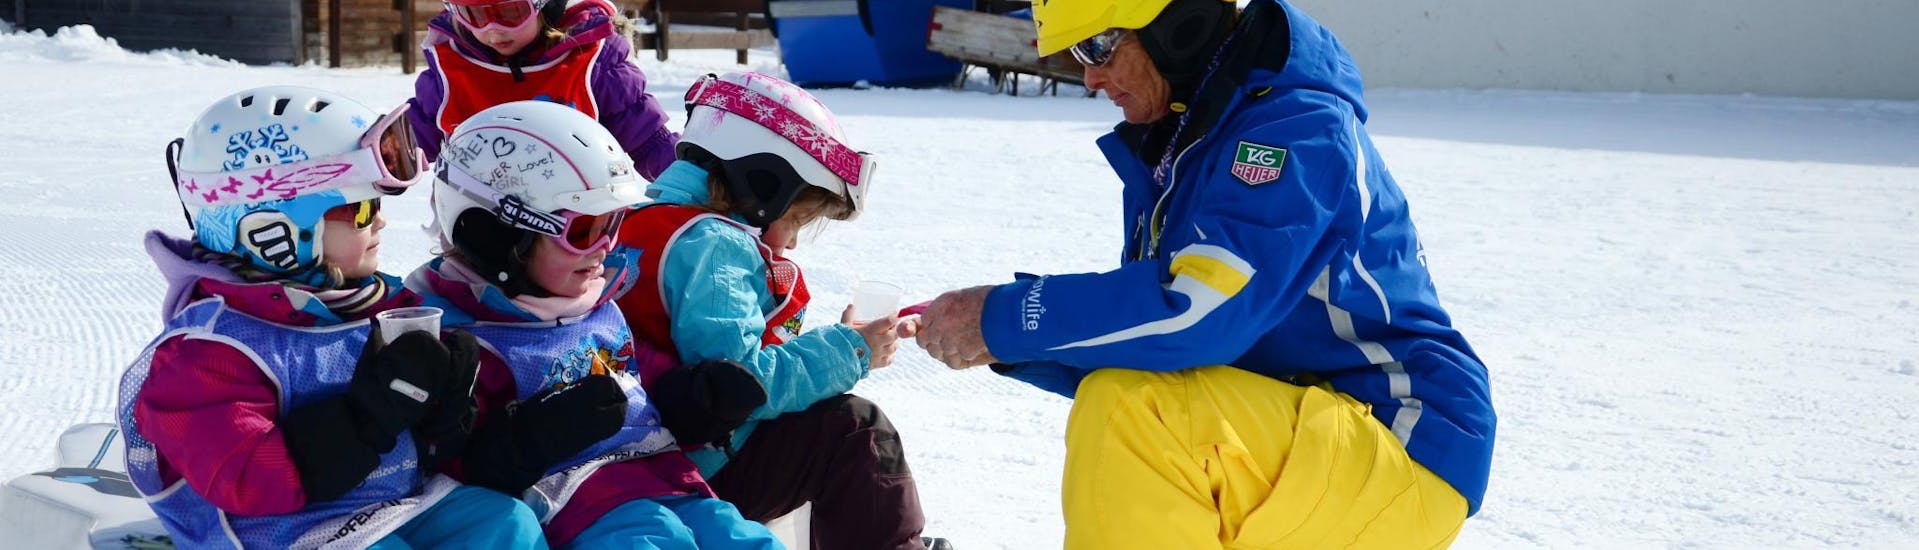 Premier Cours de ski Enfants "Bolgen" (4-7 ans).